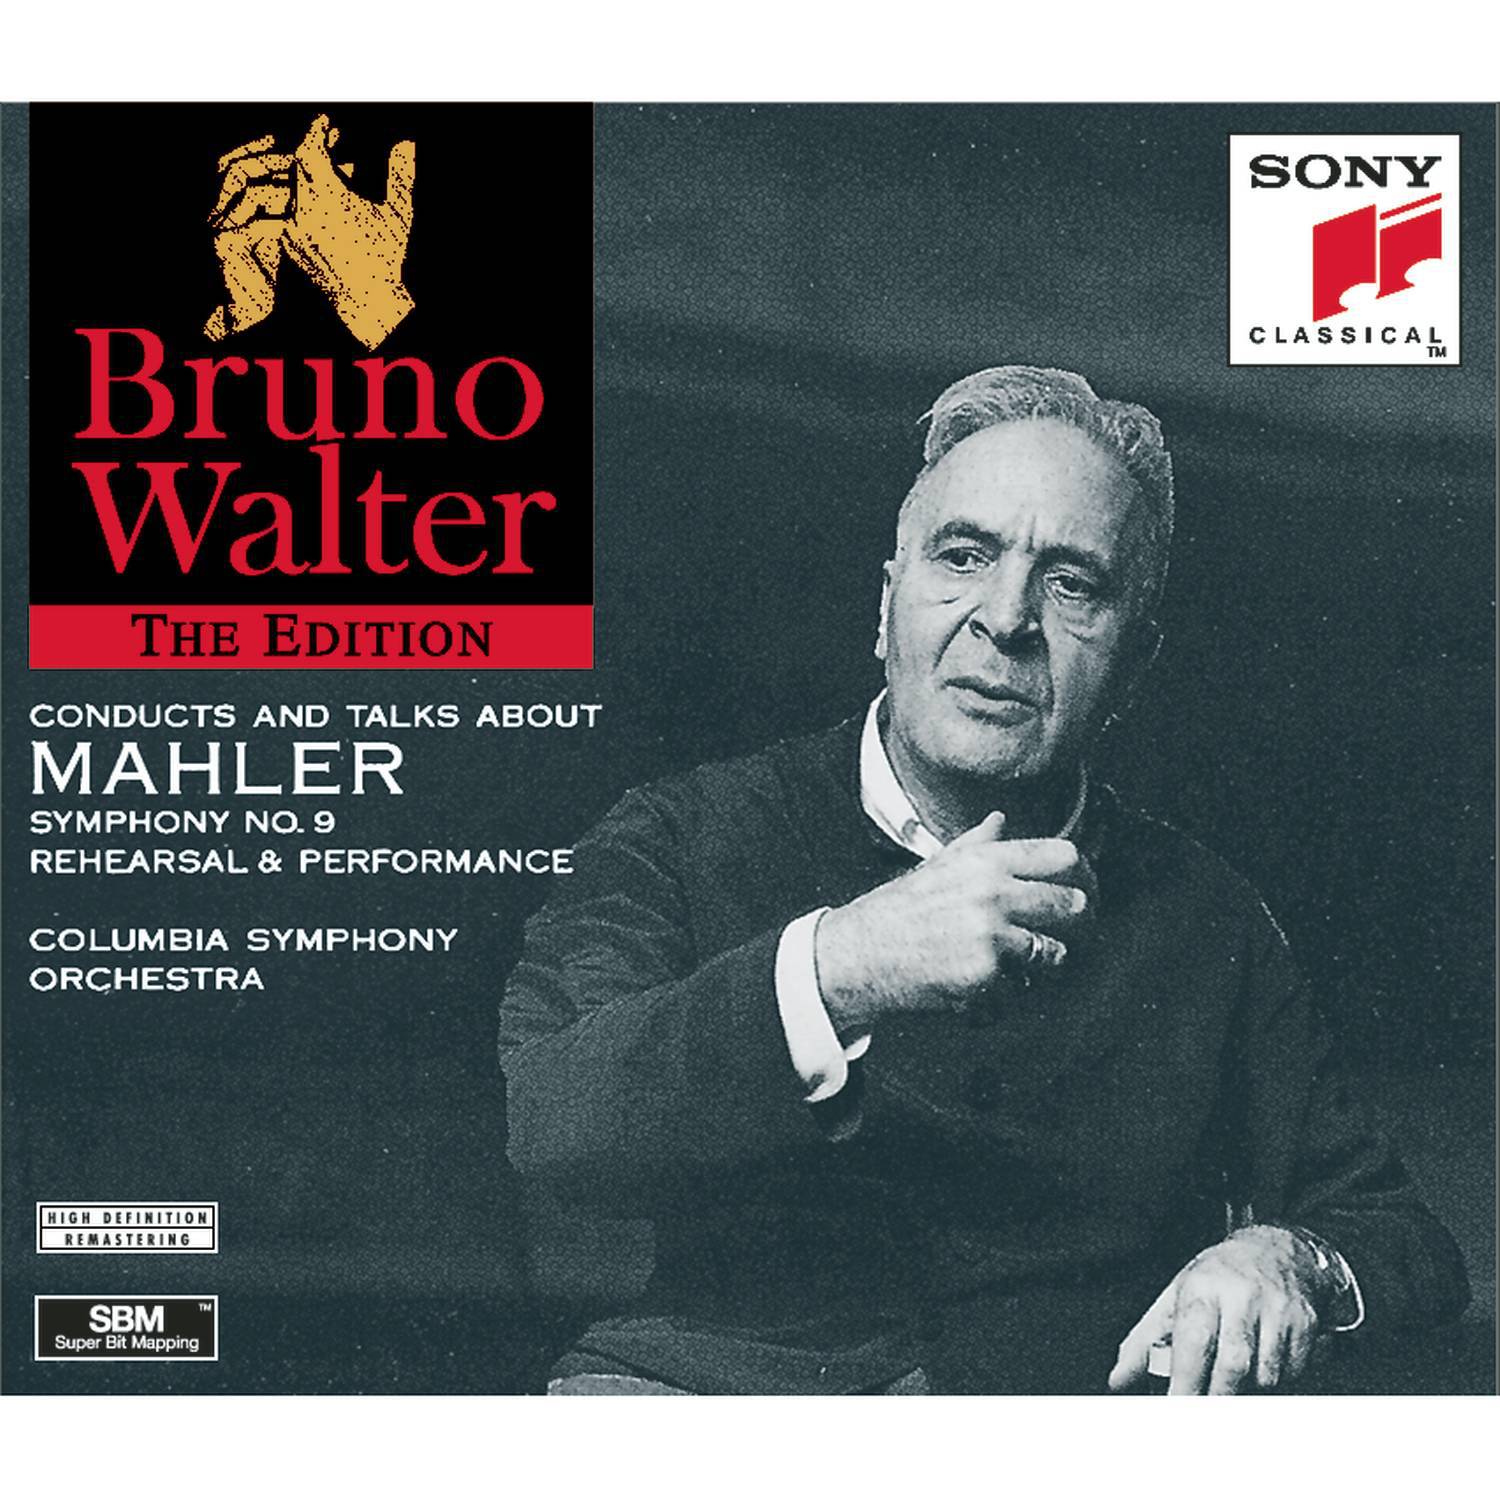 Mahler:  Symphony No. 9, A Talking Portrait, A Working Portrait